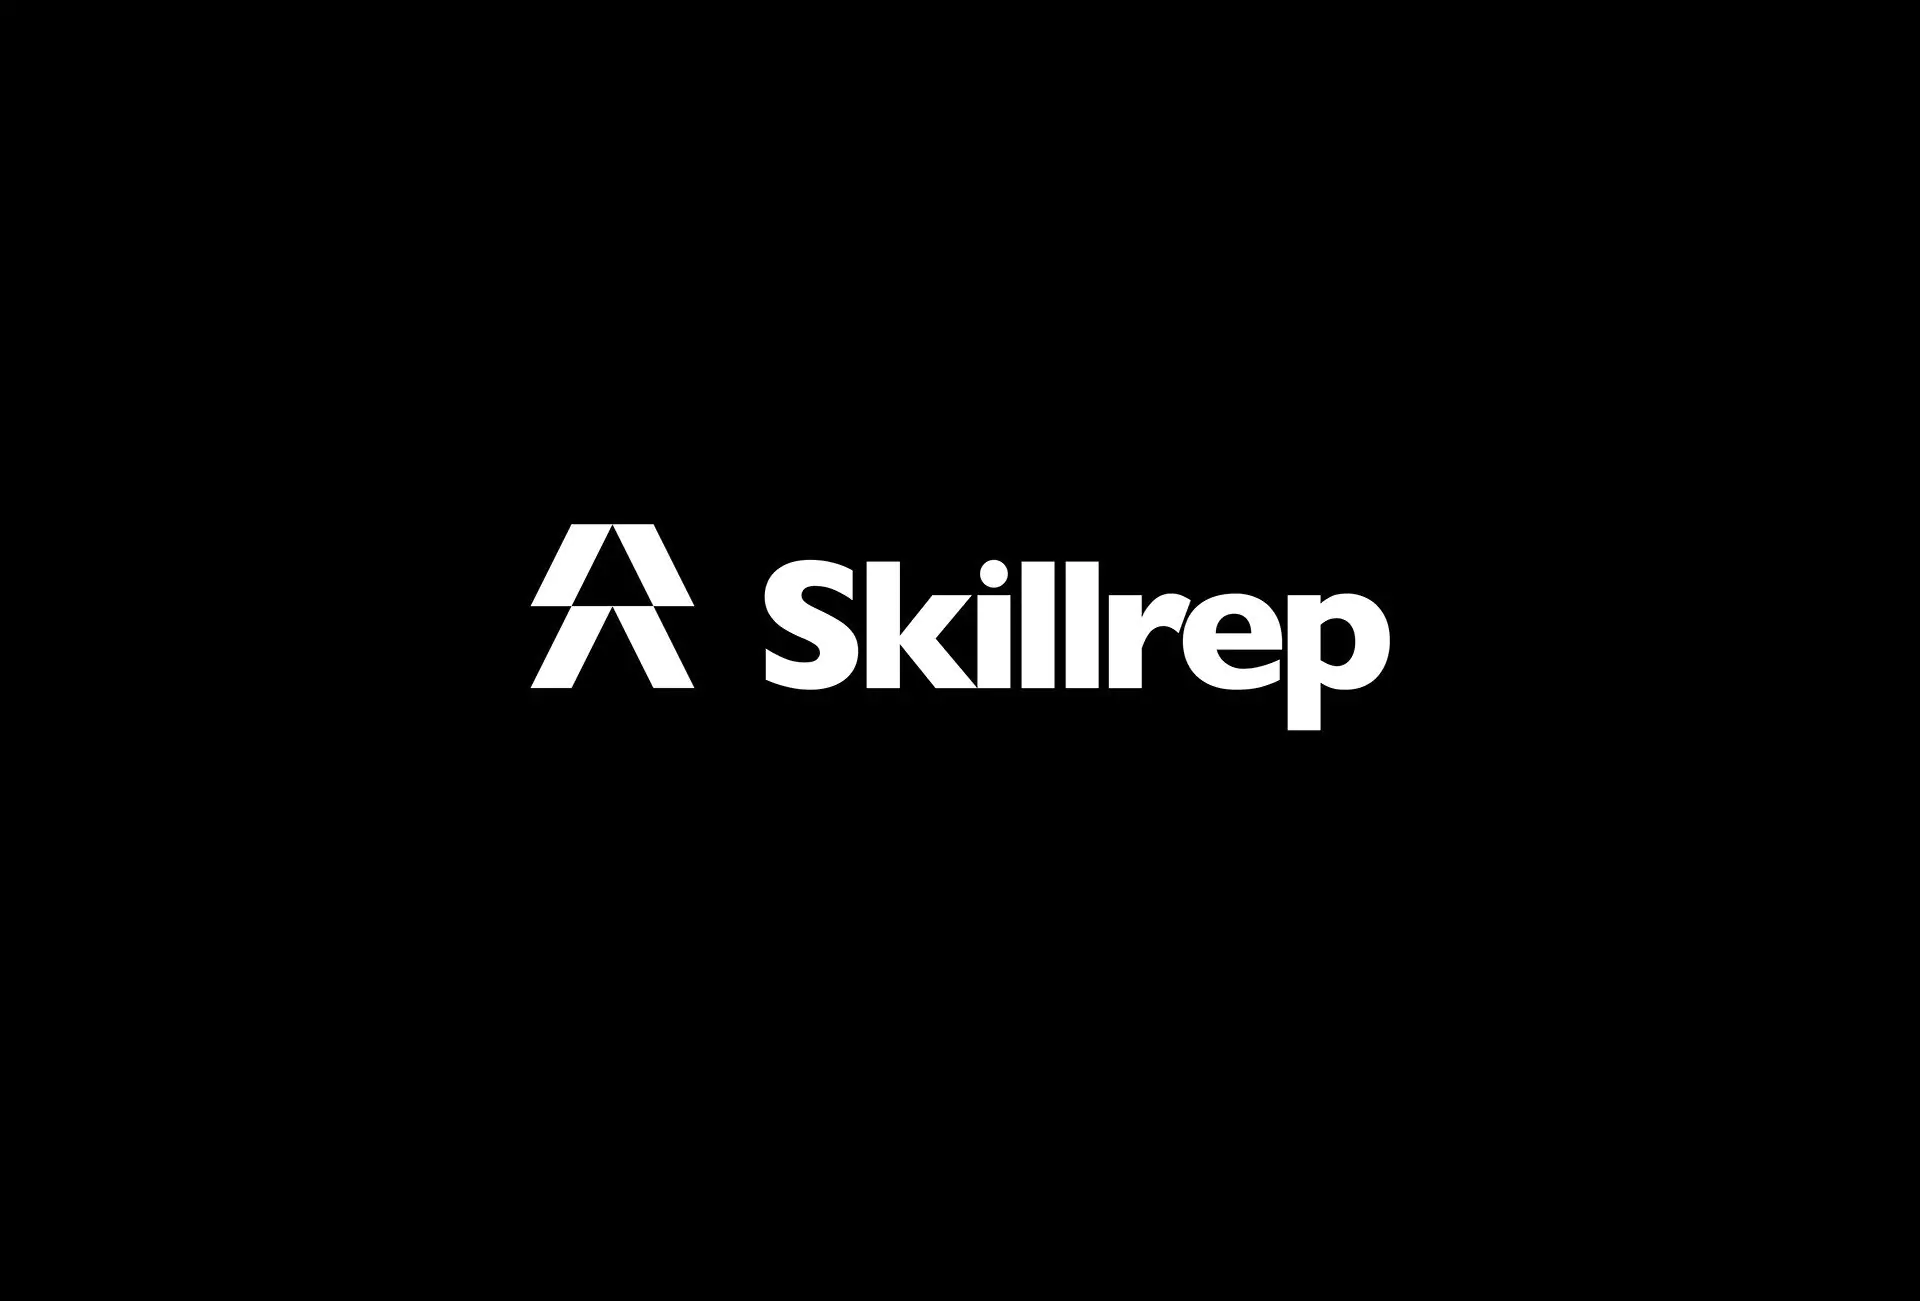 Skillrep Visual Identity - Logo Design